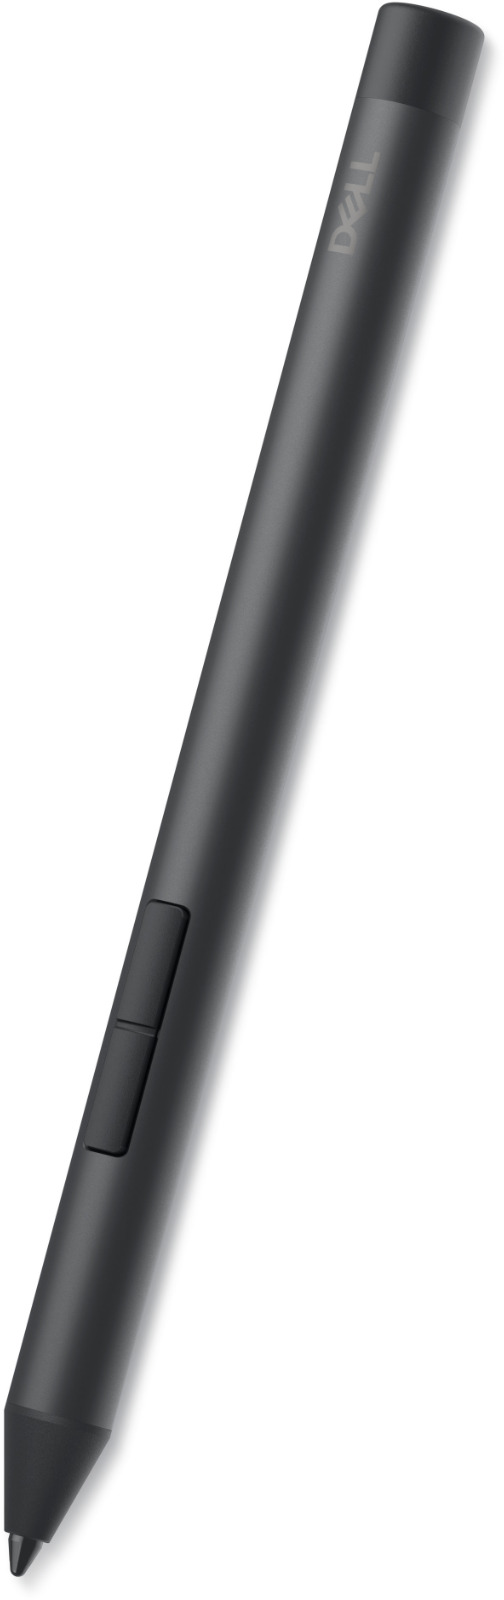 Dell Active Pen - PN5122W-F5NFM